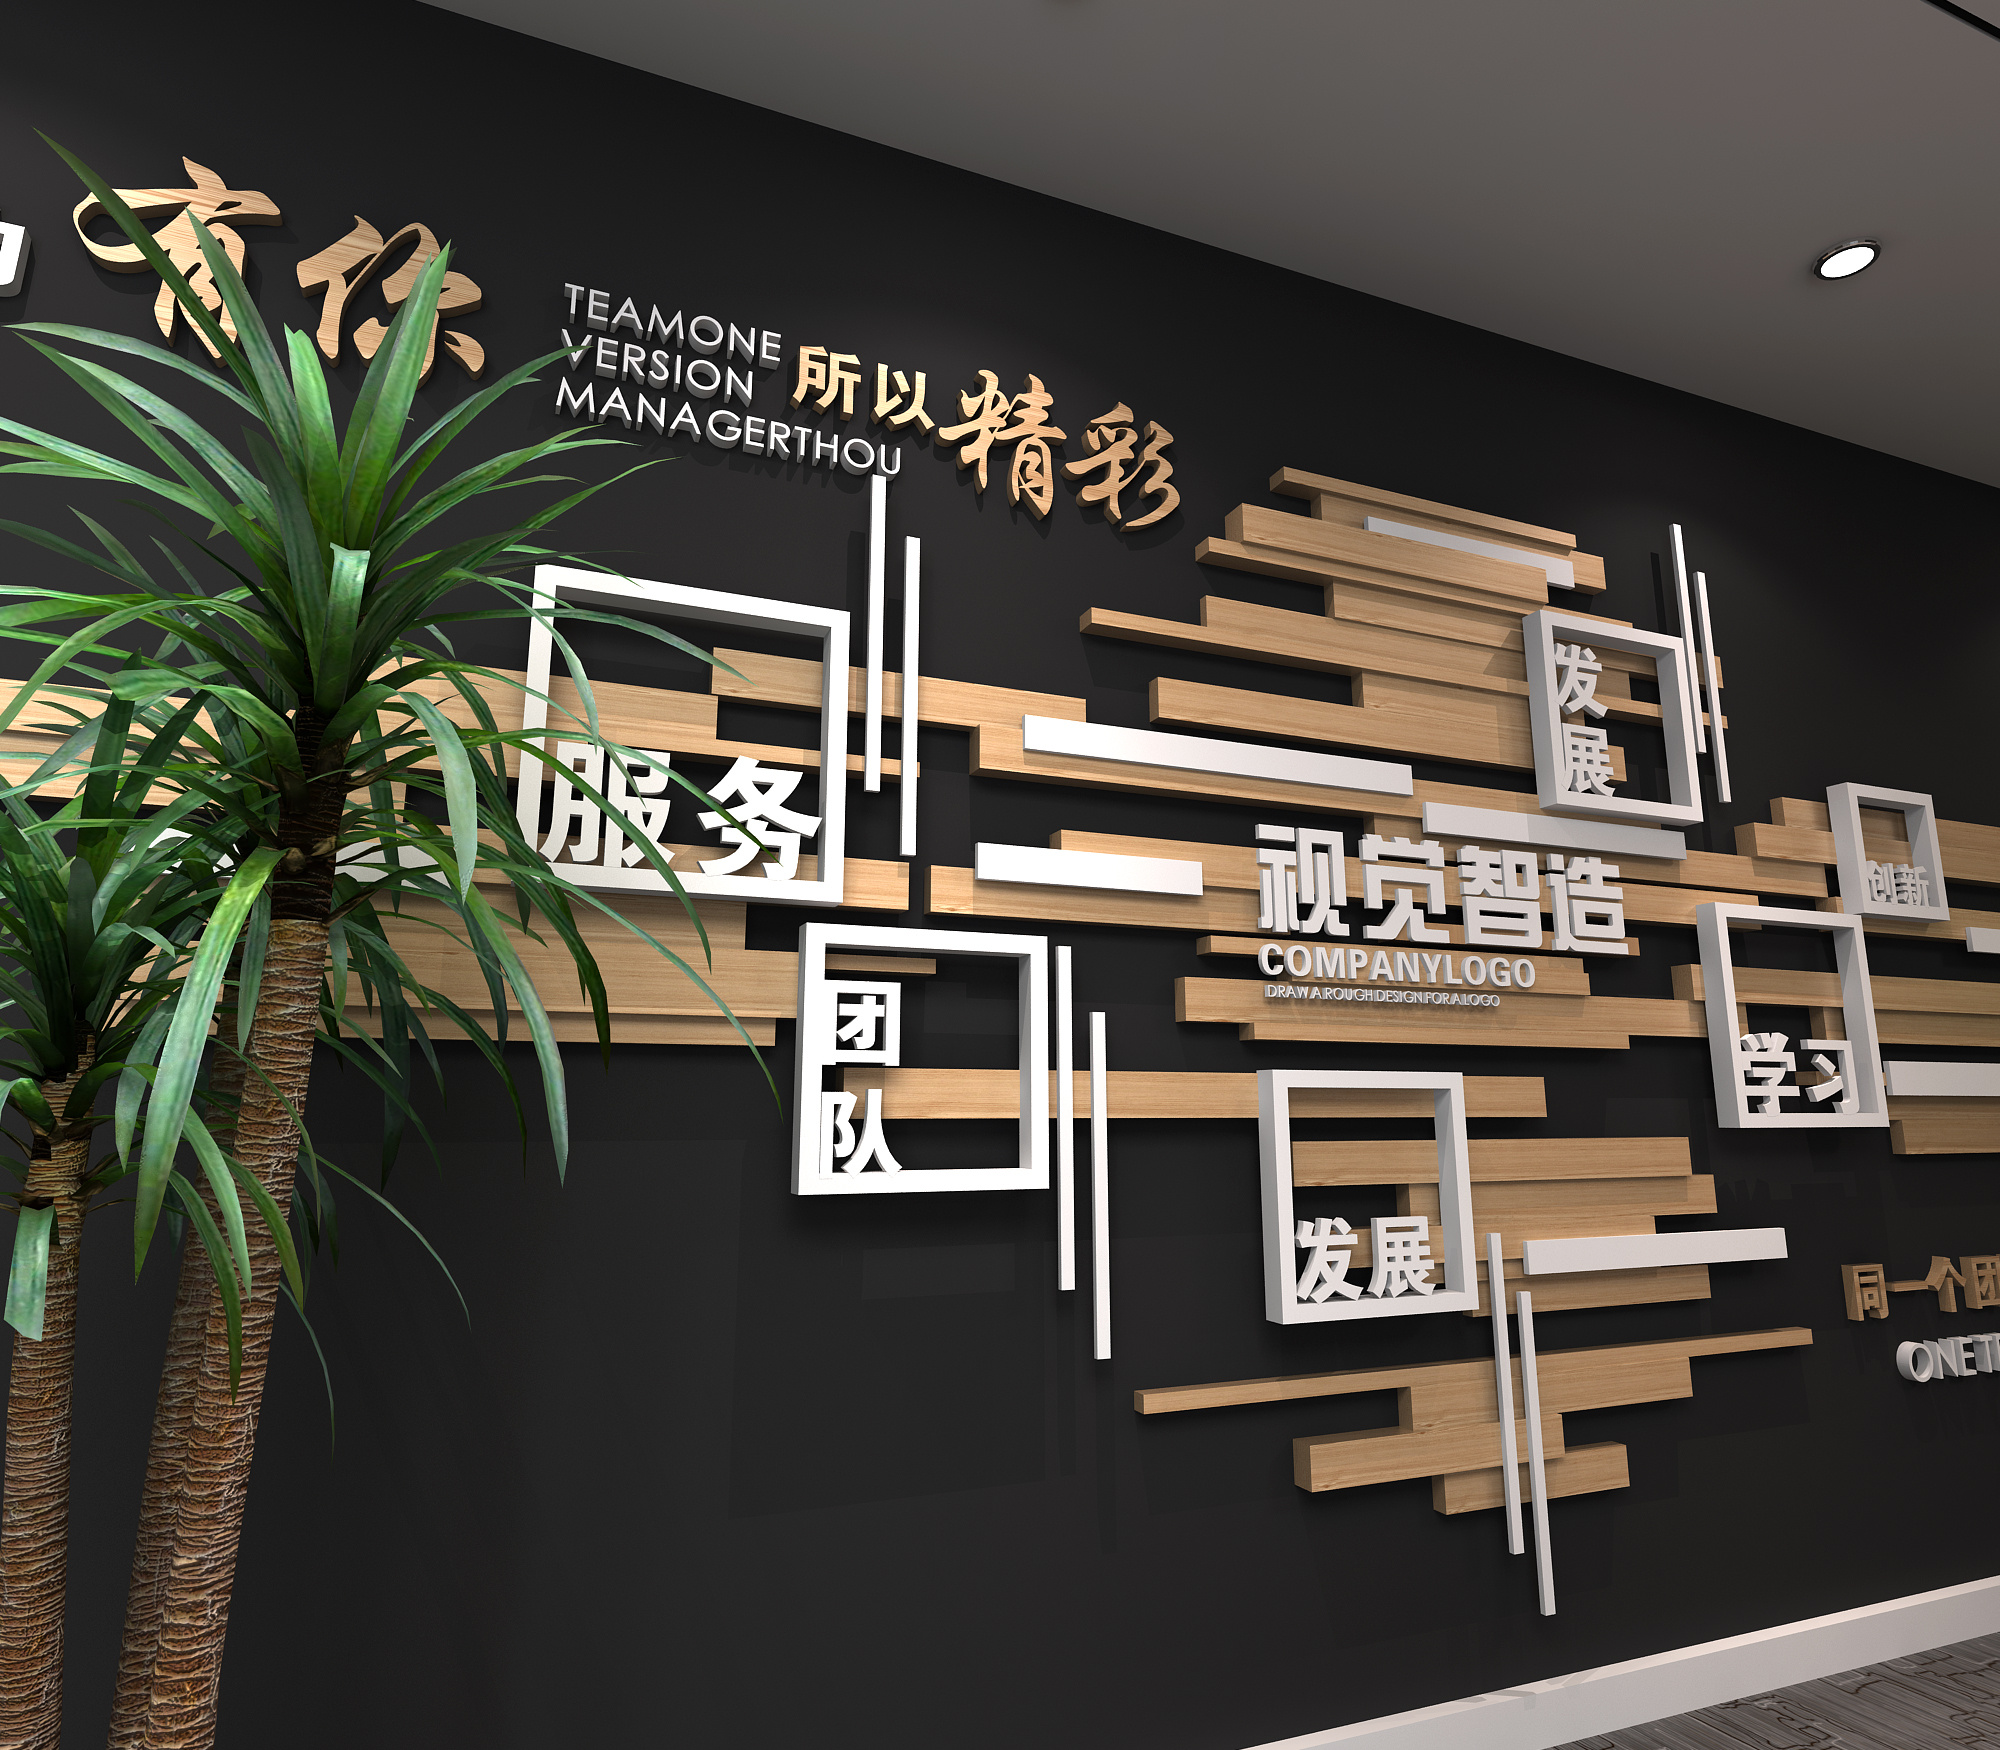 公司企业室内墙面文化墙设计墙面装饰